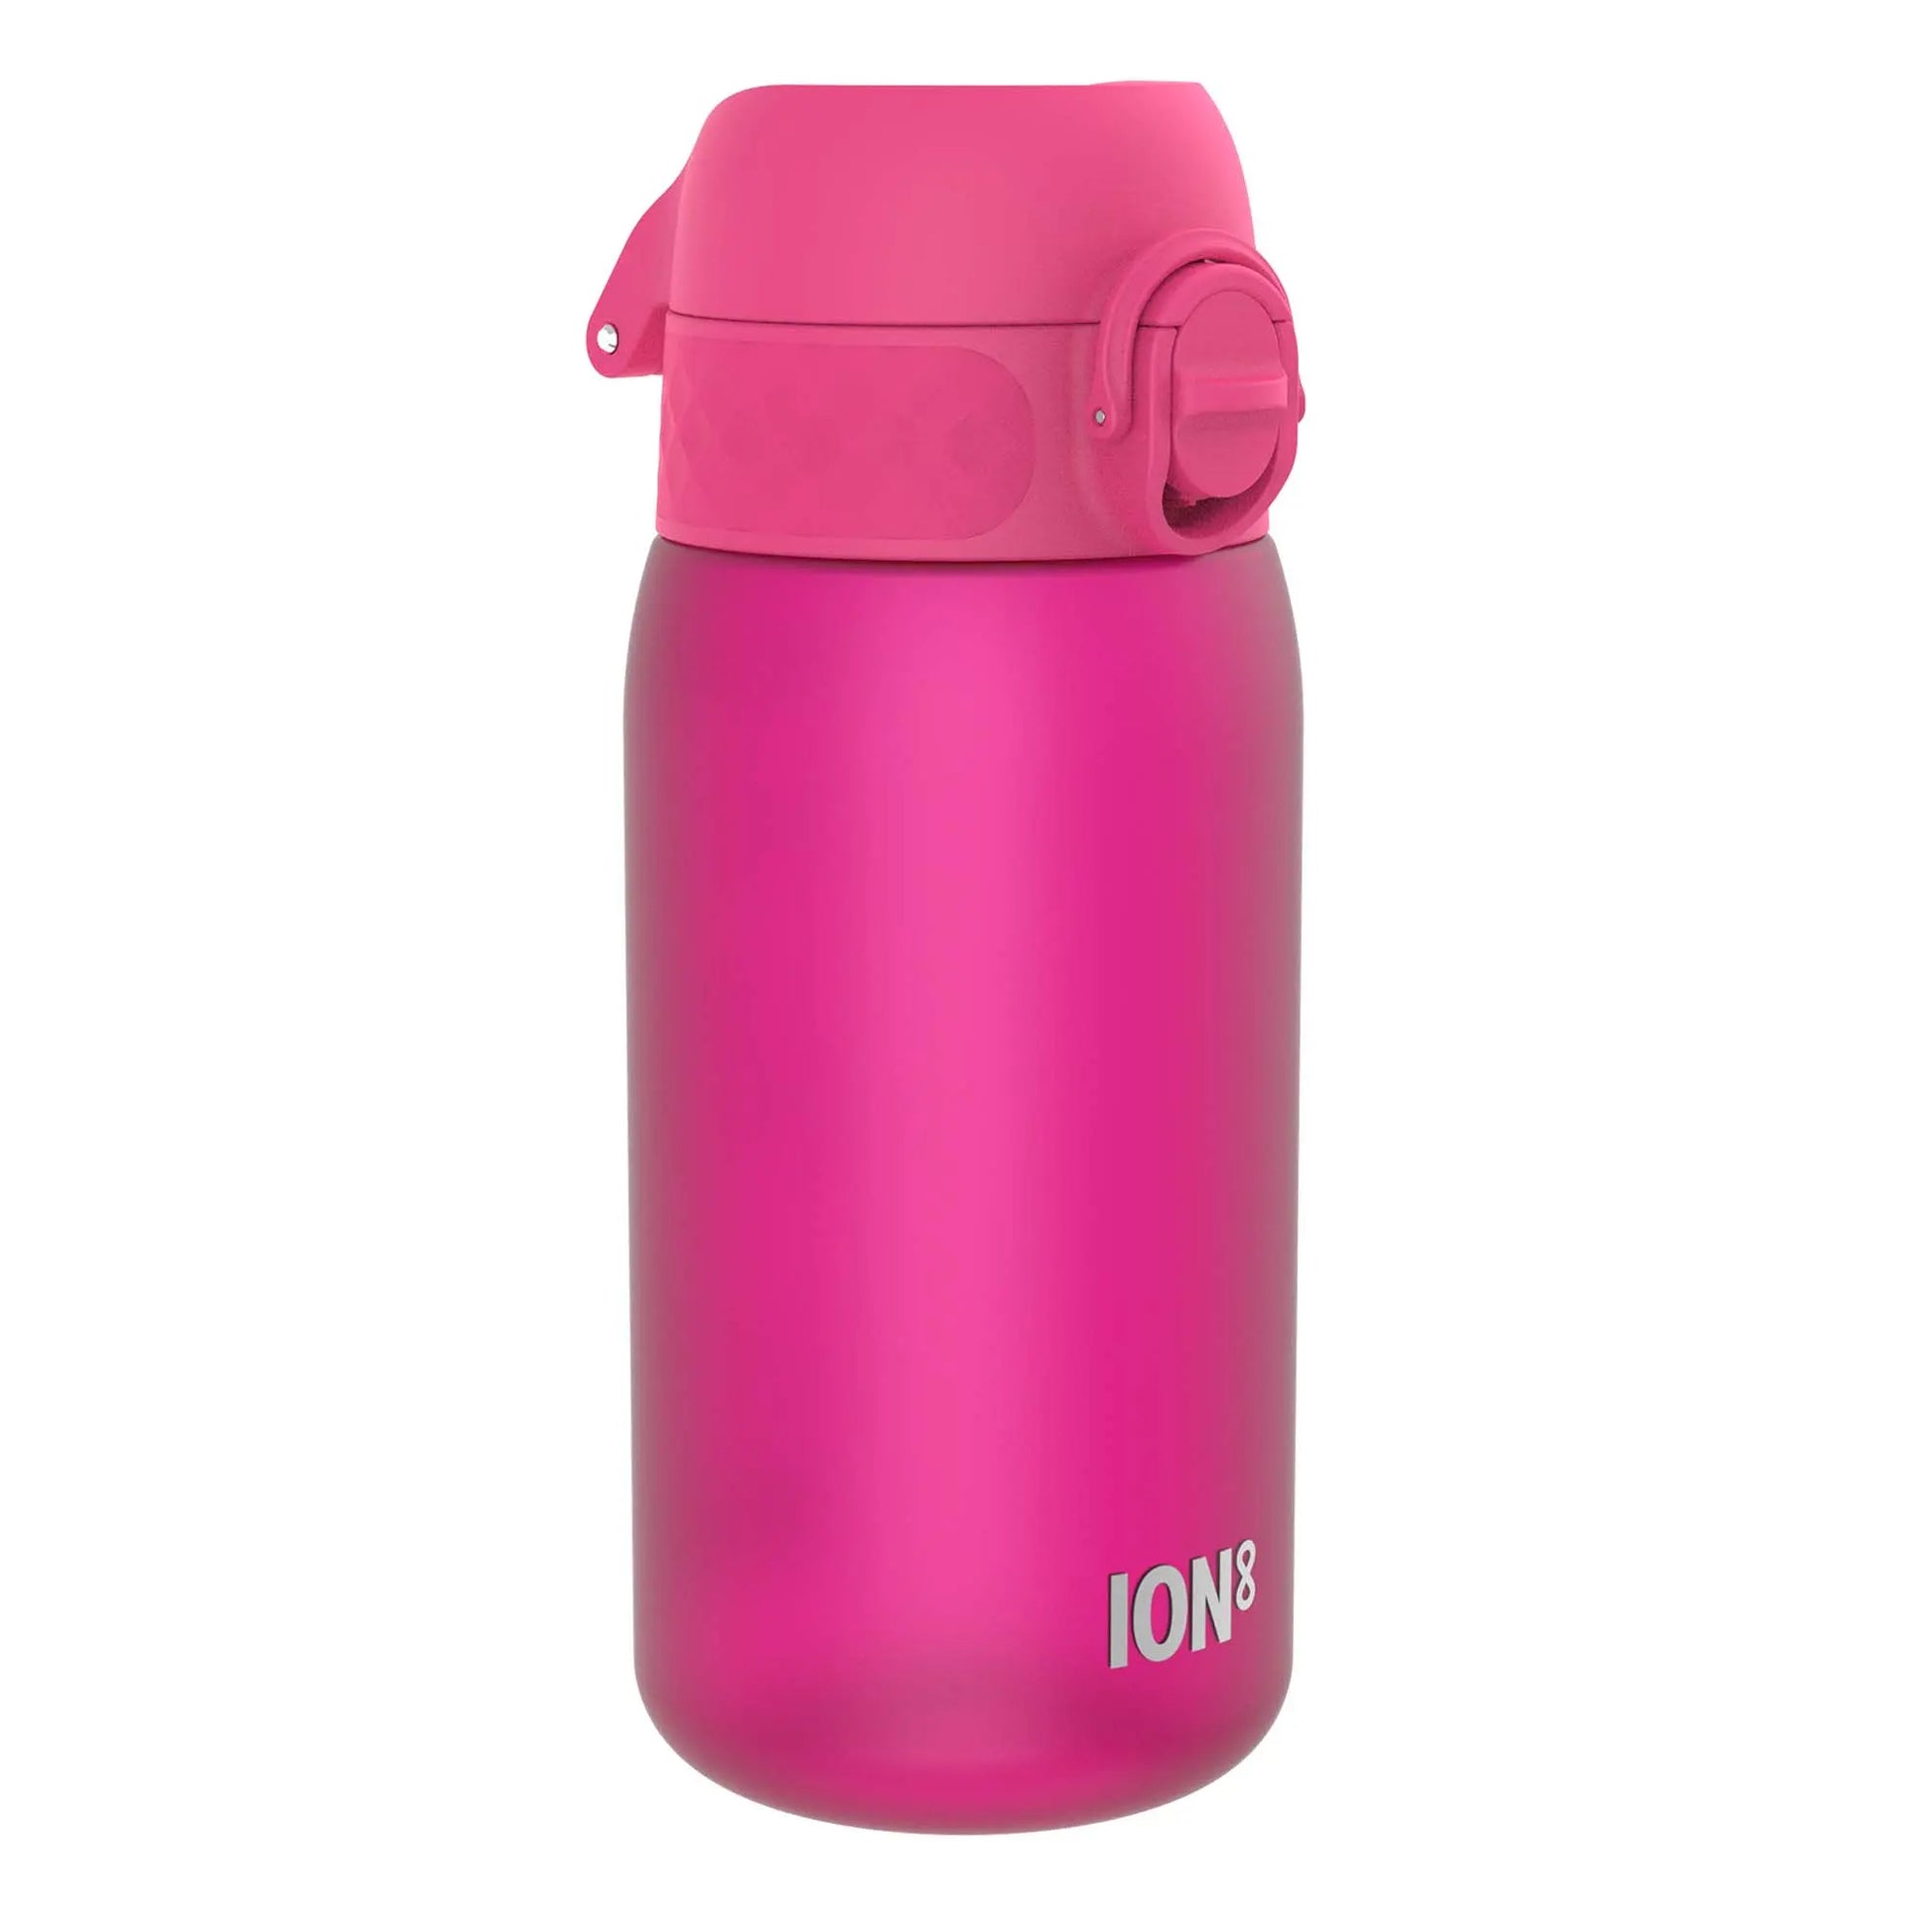 Ion8 Leak Proof Kids Water Bottle BPA Free Space